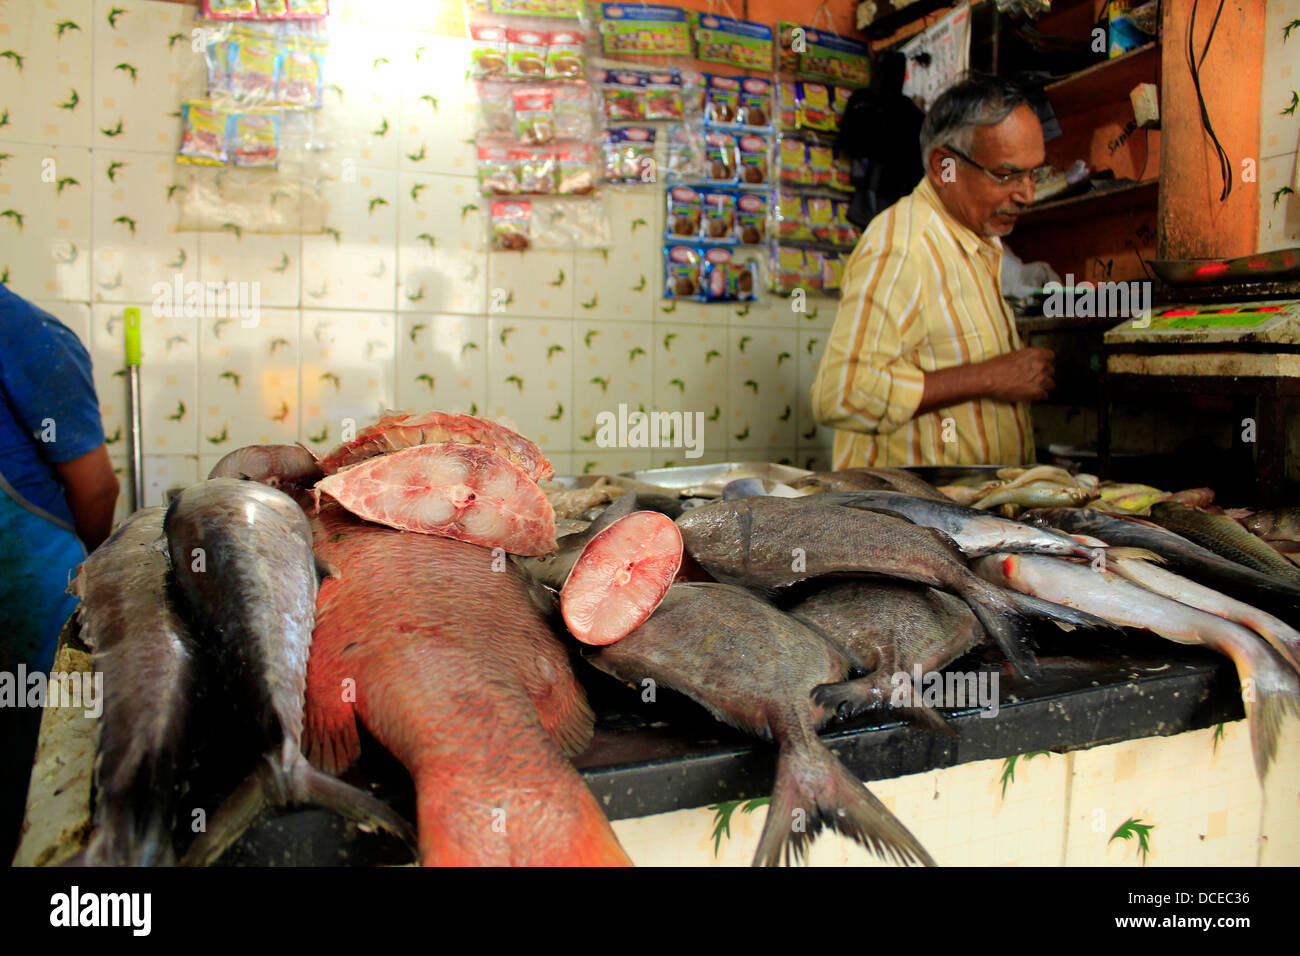 Fish market , bangalore, India Stock Photo